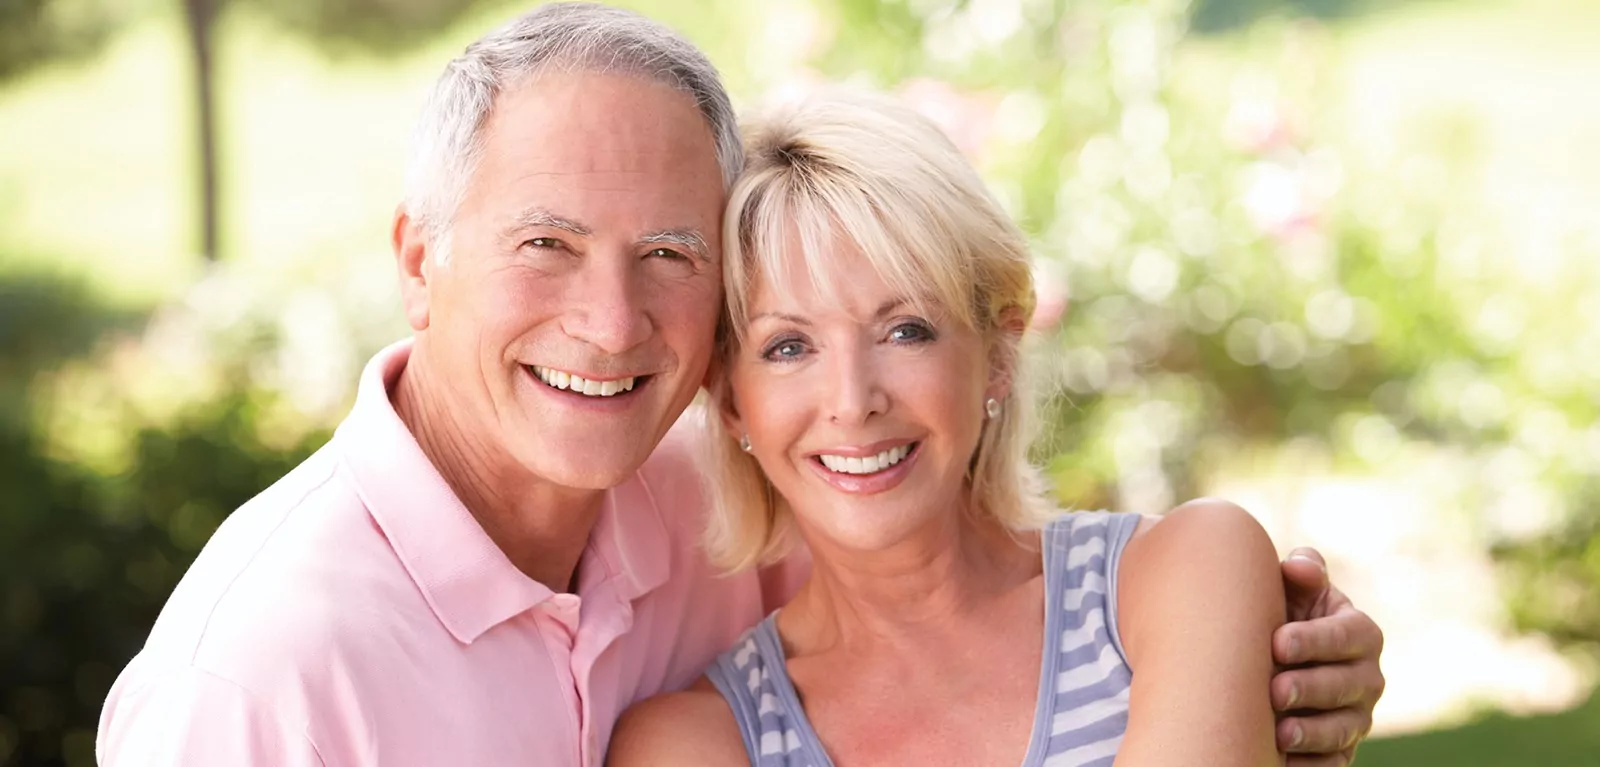 A senior couple enjoy their new smile with dental implants